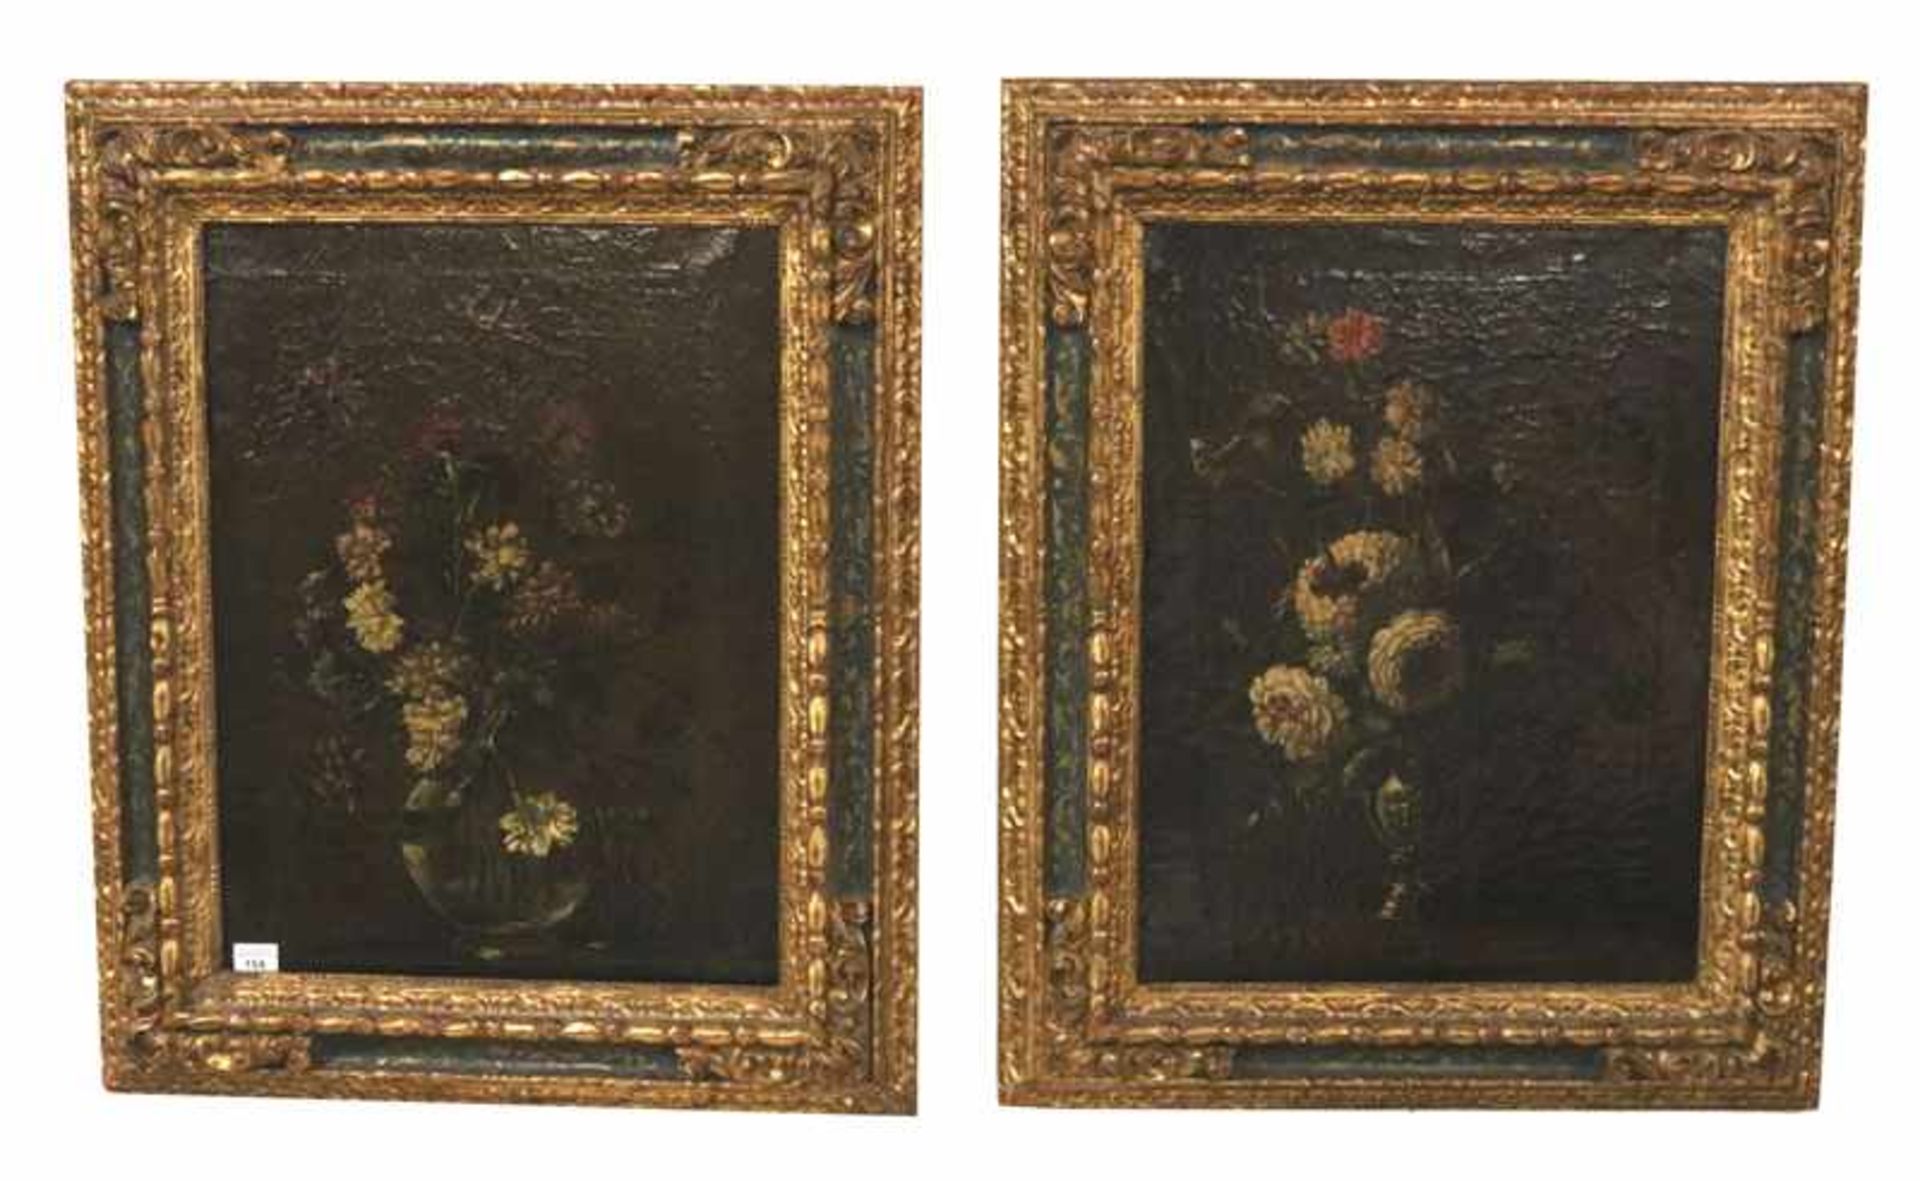 2 Gemälde ÖL/LW 'Blumenstilleben in Vase', 18. Jahrhundert, ev. 17. Jahrhundert, detailliert, fein